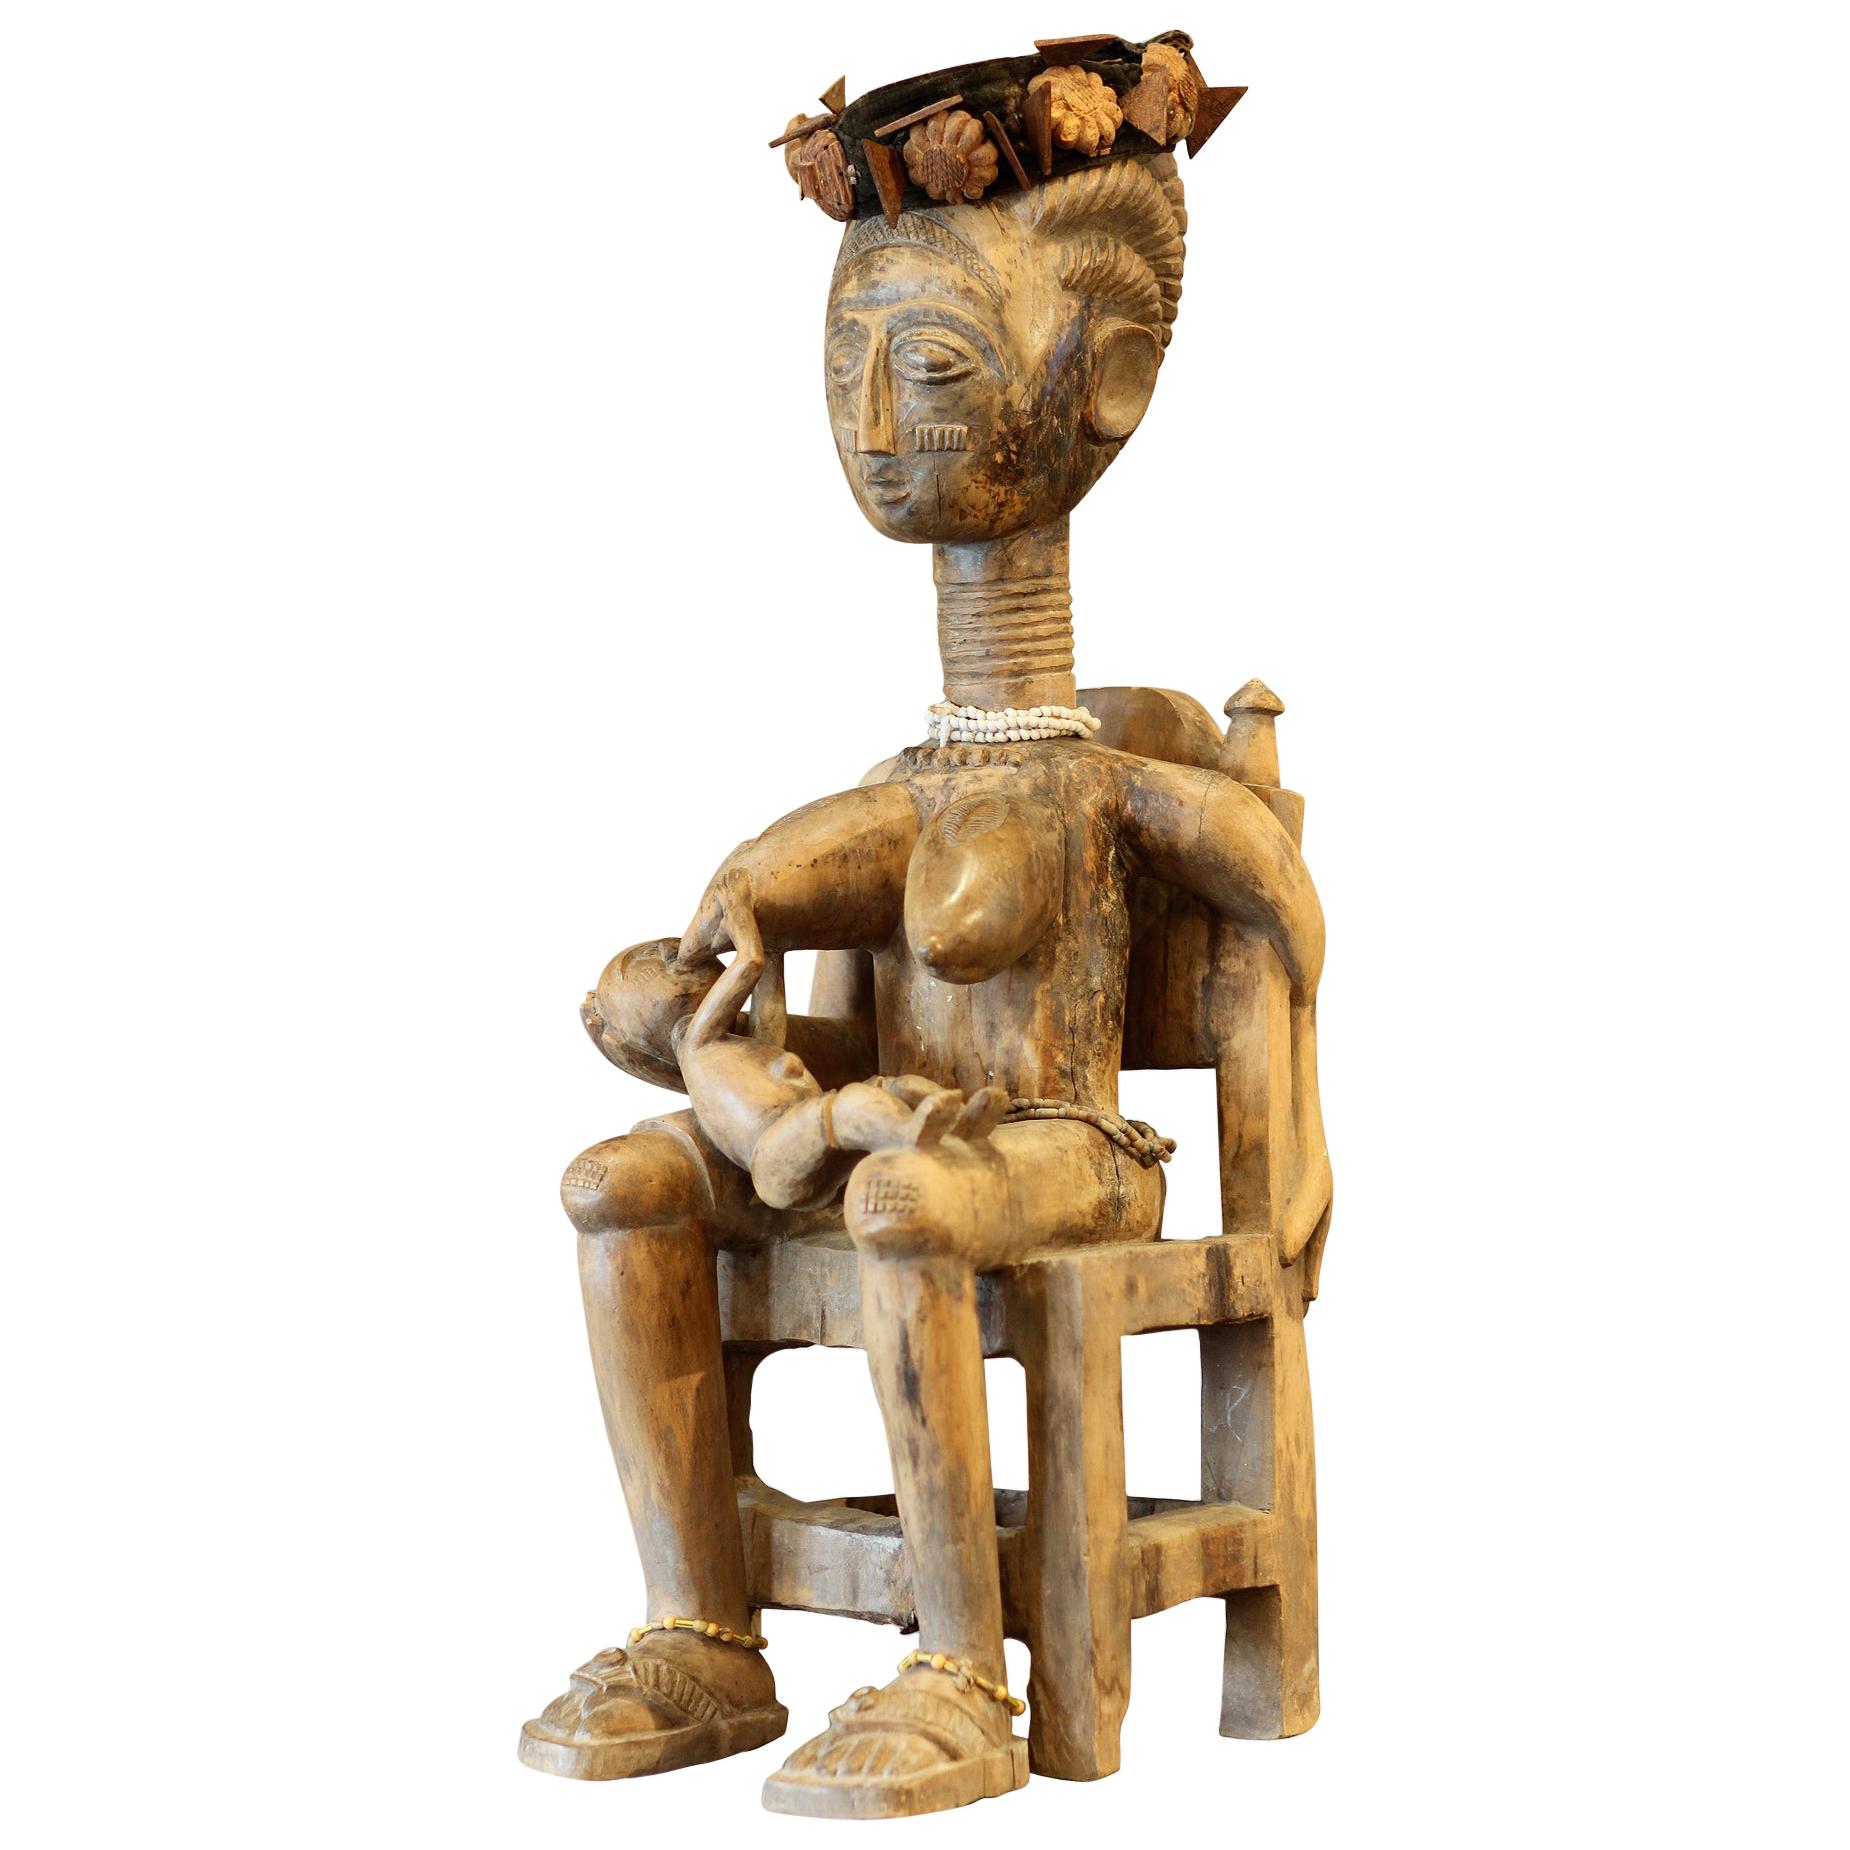 Ashanti Ghana African Art Sculpture For Sale